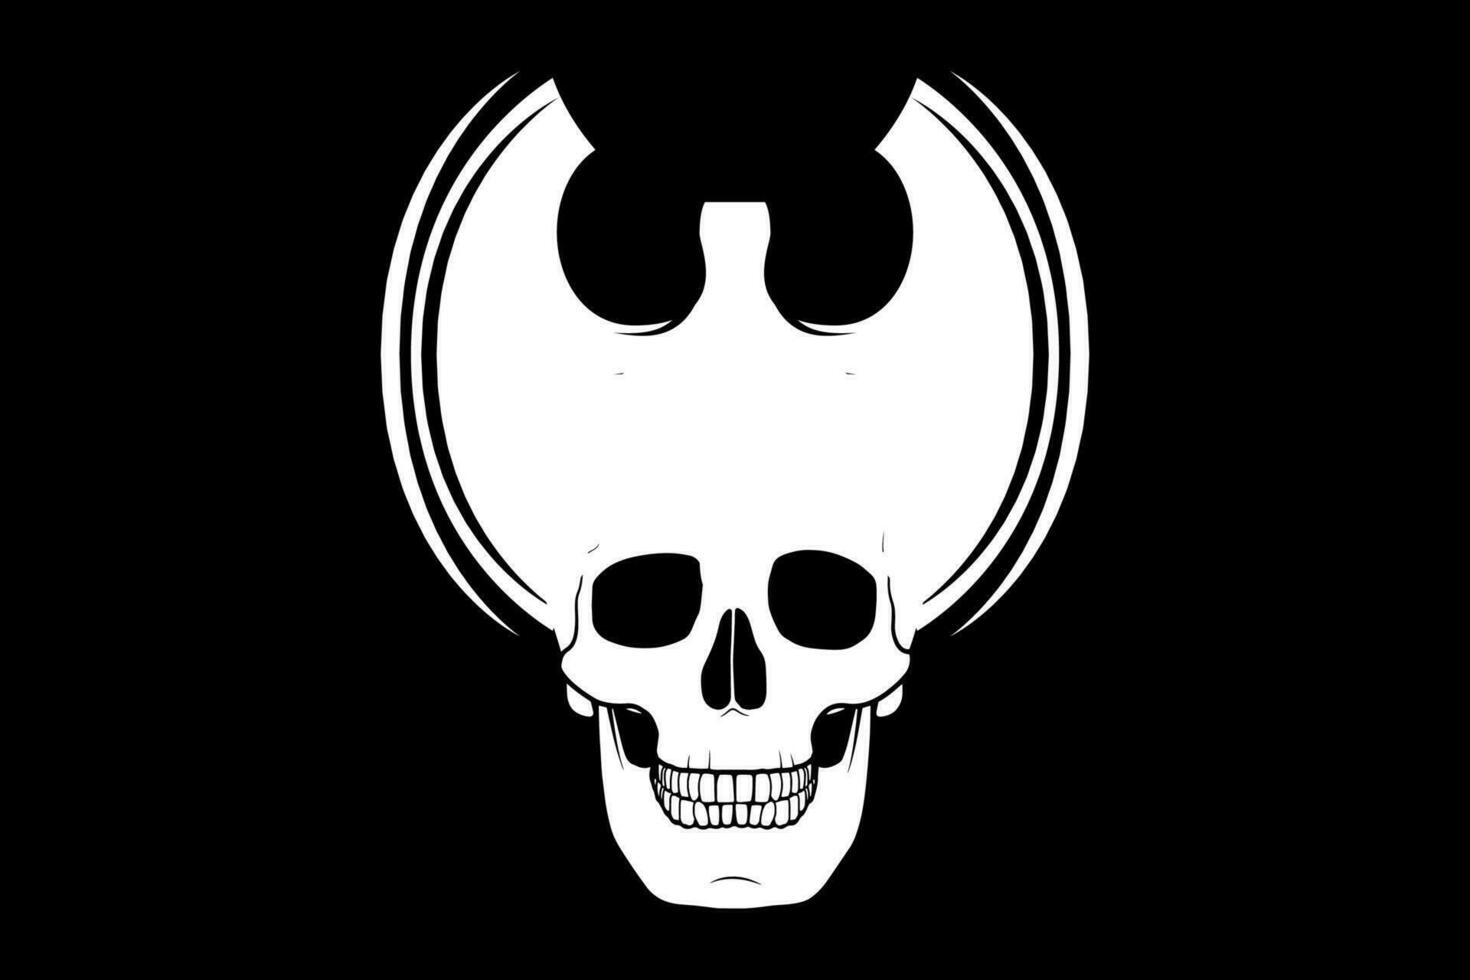 Skull head monster graphic vector design